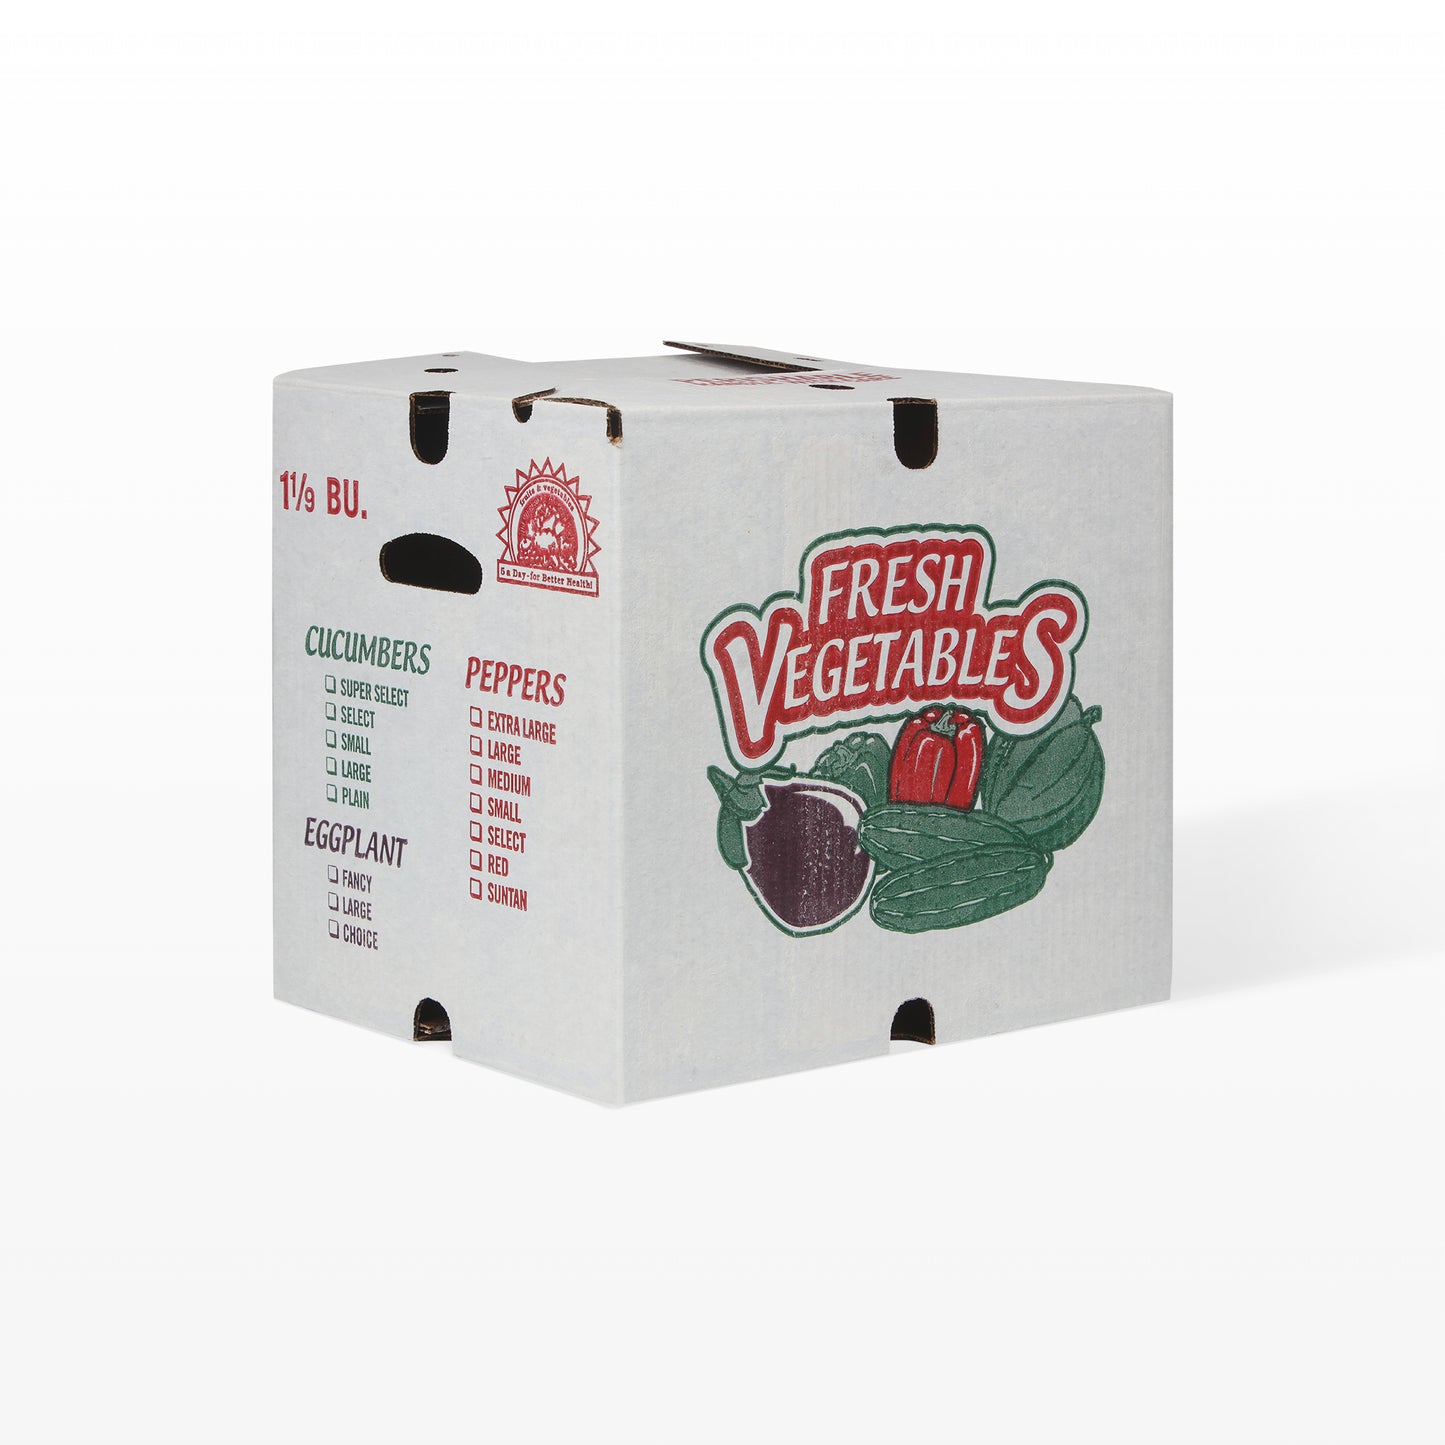 1 1/9 Bushel Waxed Vegetable Boxes